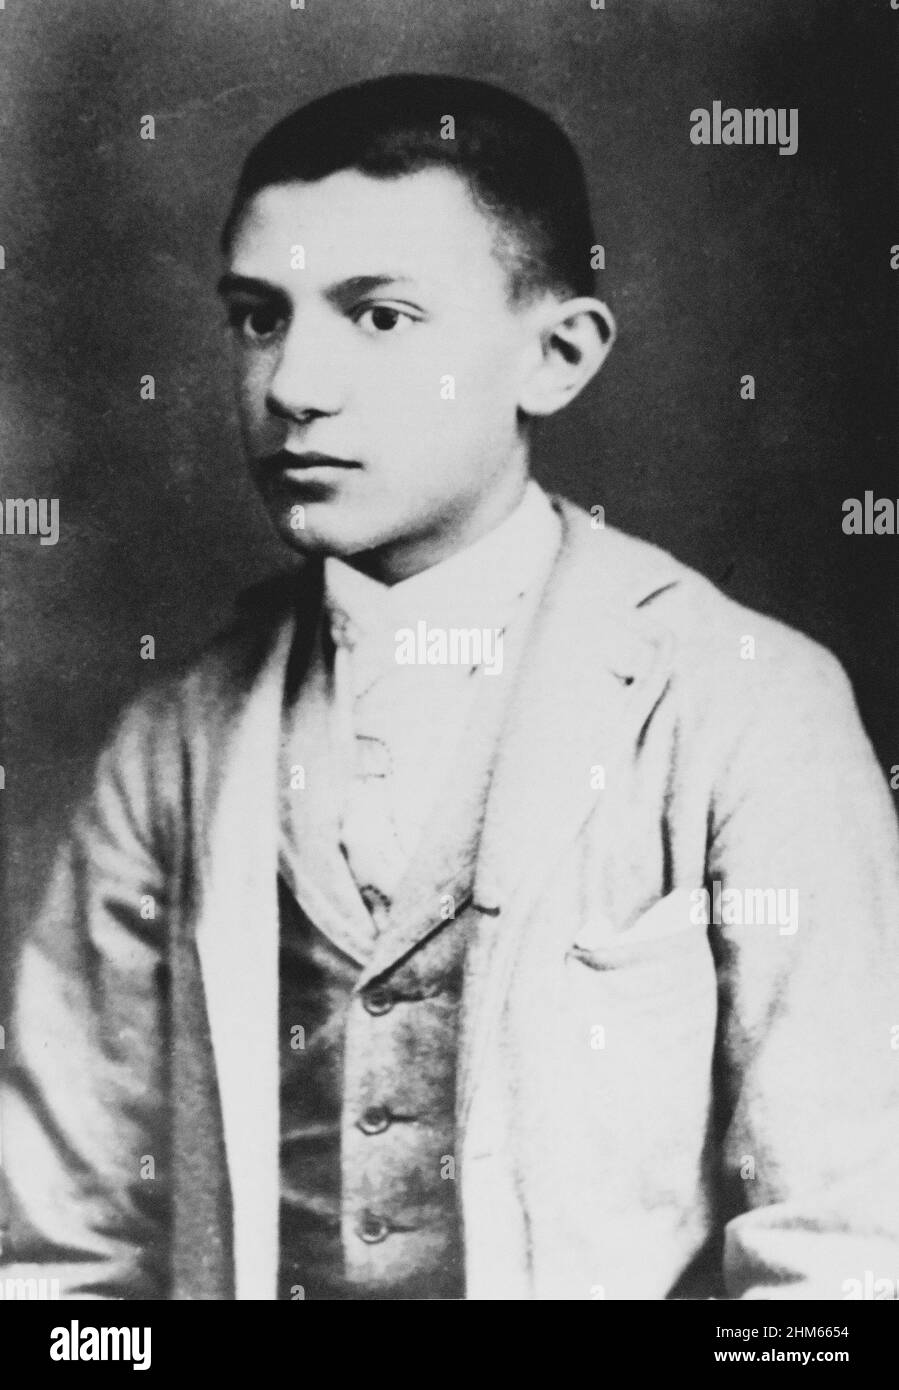 Le peintre de renommée mondiale, Pablo Picasso en 1896, Barcelone. 15 ans photographe inconnu. Amélioration numérique. Banque D'Images